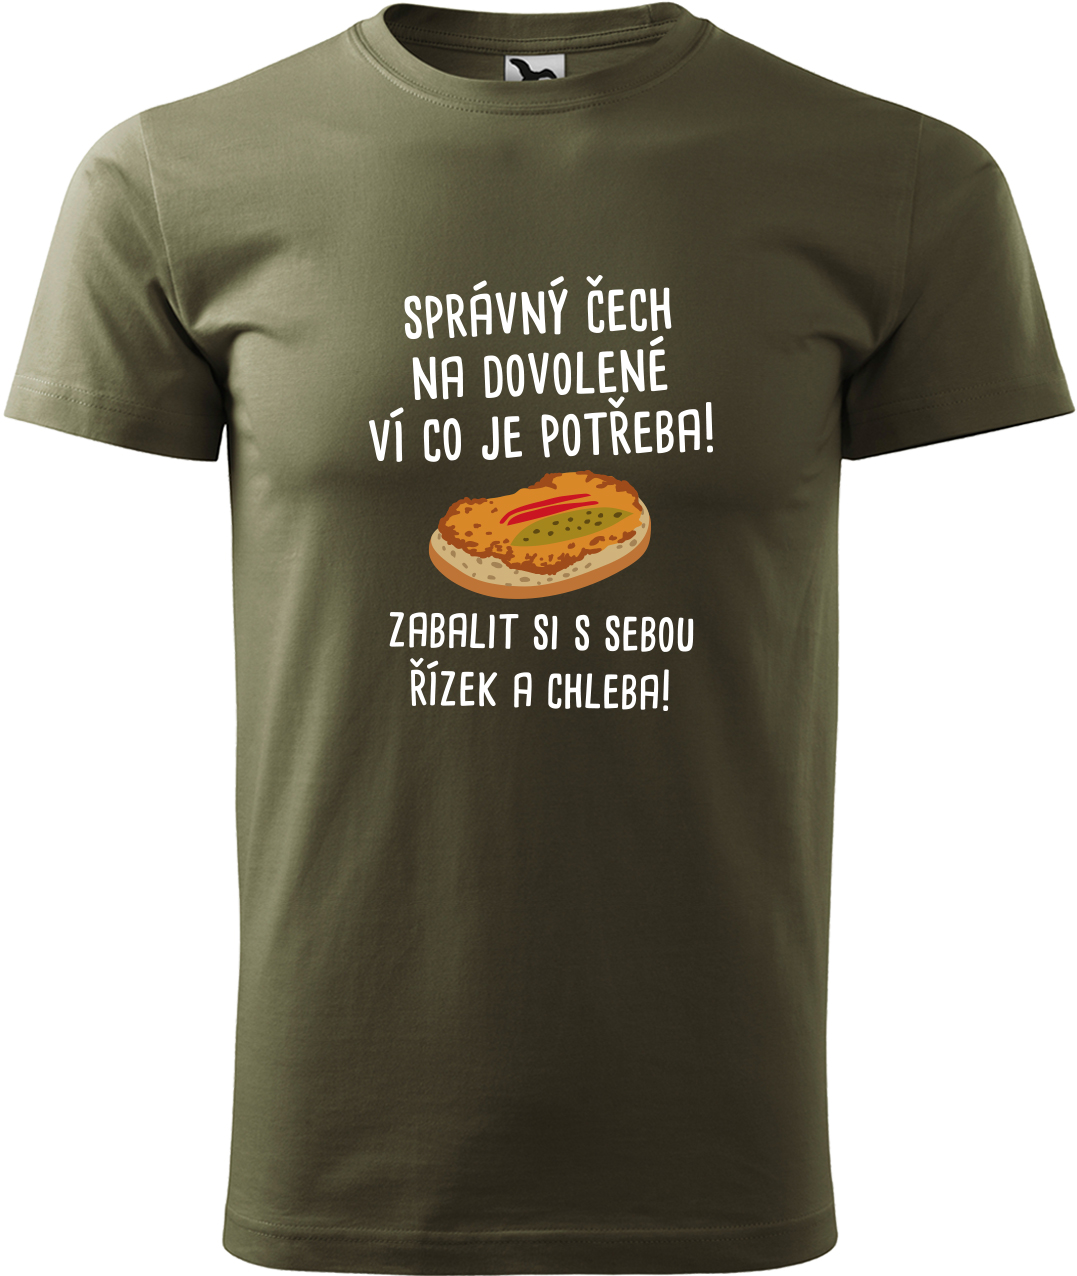 Pánské cestovatelské tričko - Správný Čech na dovolené, ví co je potřeba! Velikost: S, Barva: Military (69), Střih: pánský